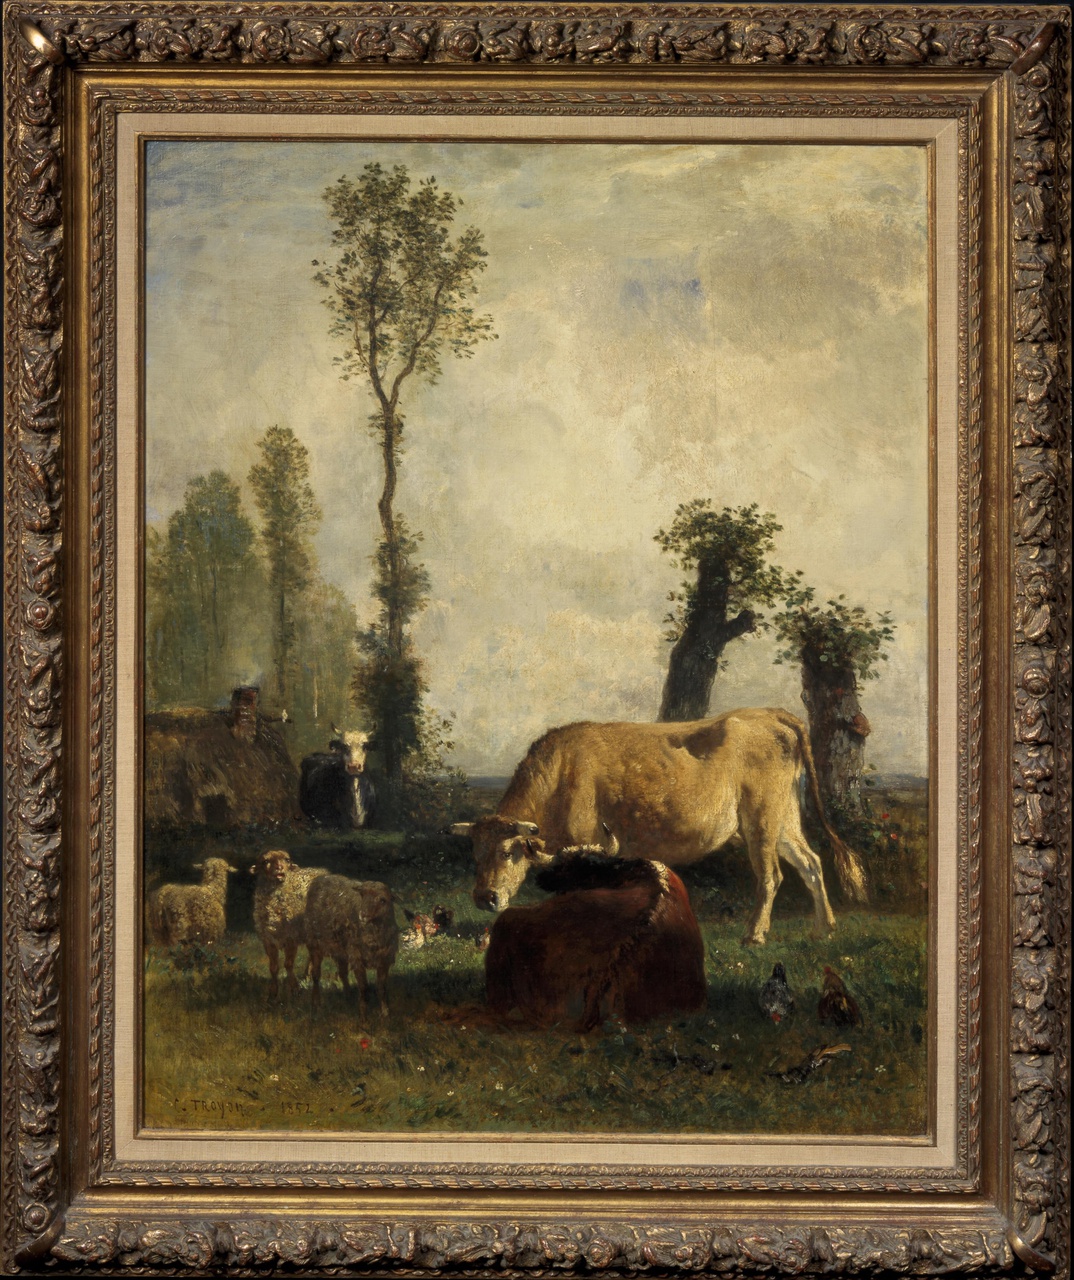 Vaches et moutons au paysage